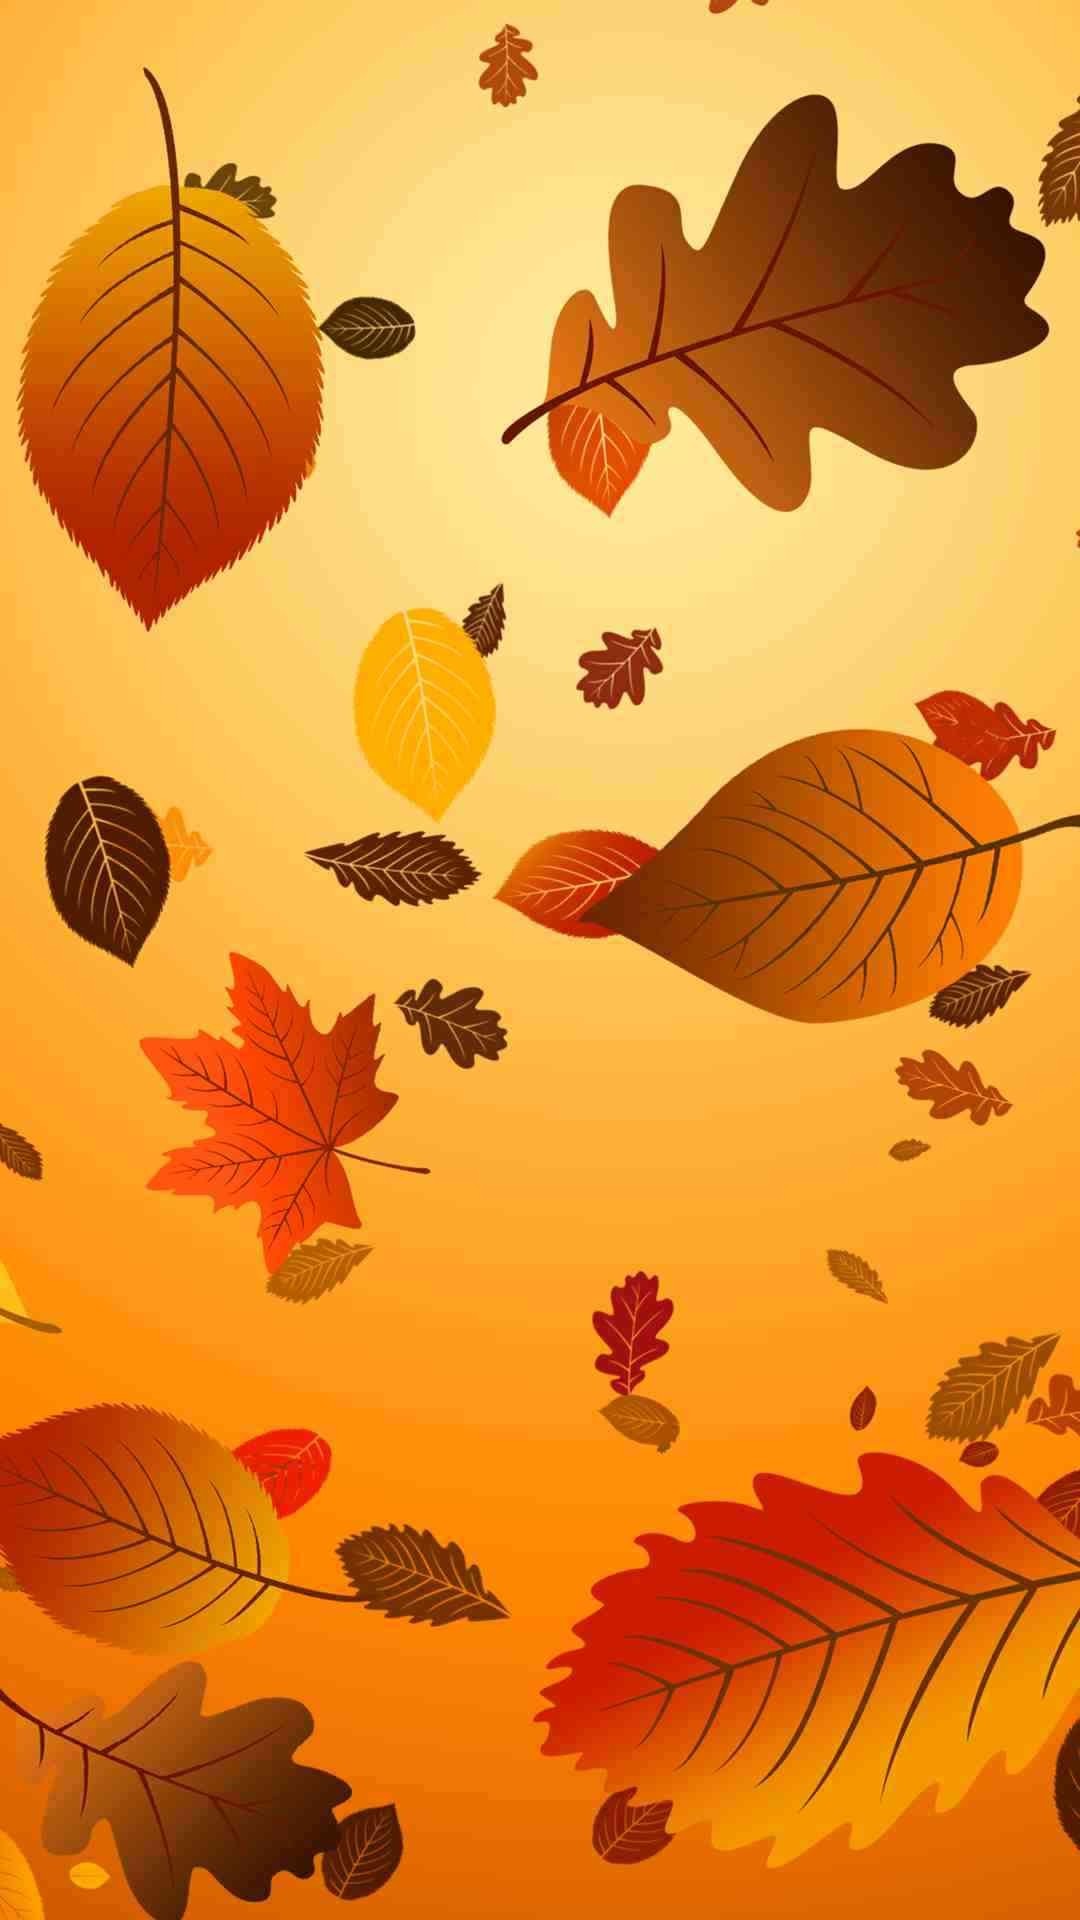 추수 감사절 배경 아이폰,잎,주황색,노랑,가을,나무